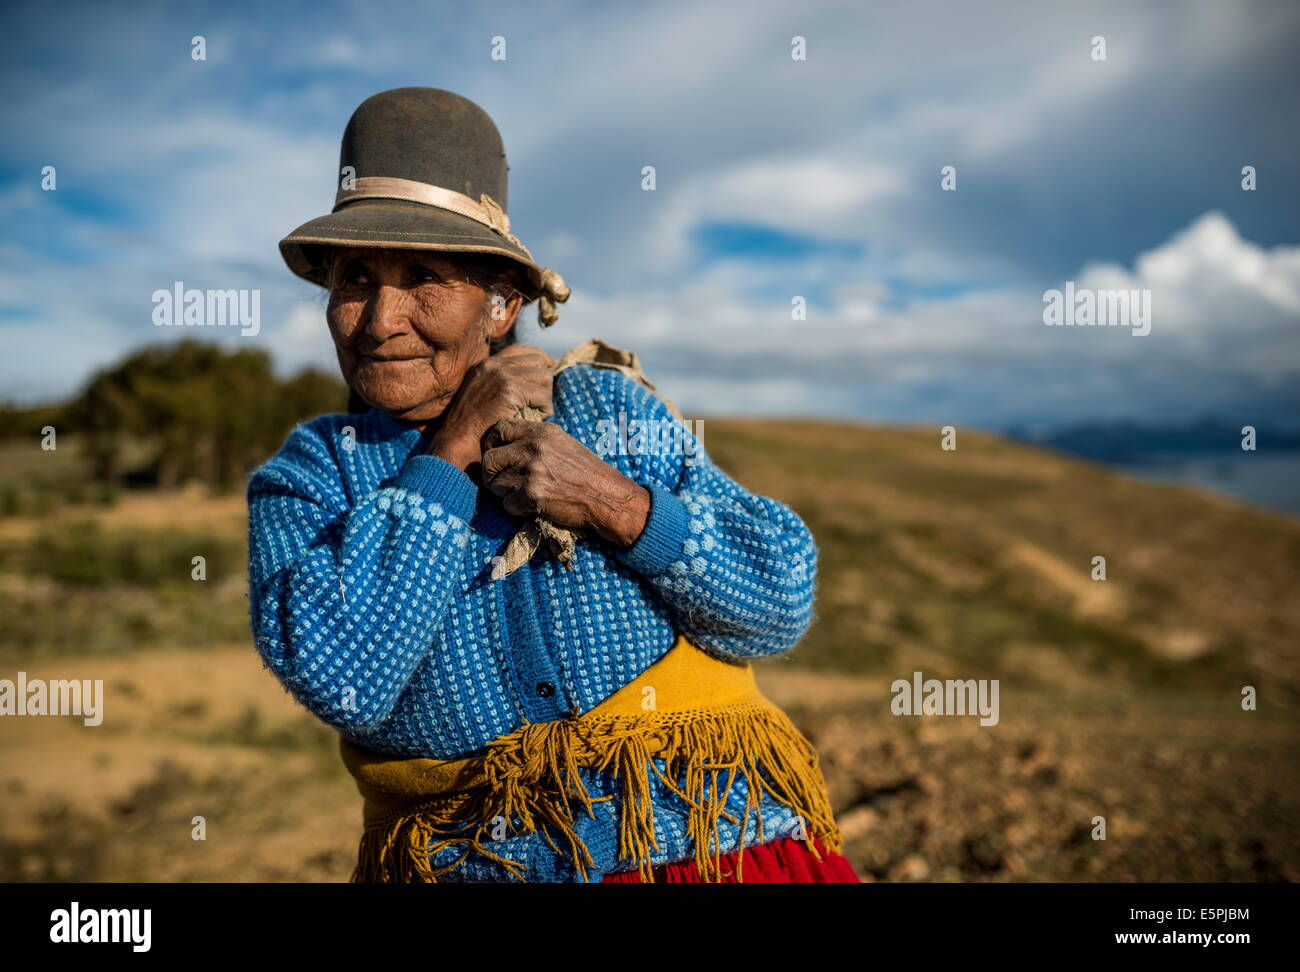 Portrait of local Bolivian woman, Isla del Sol, Lake Titicaca, Bolivia, South America Stock Photo